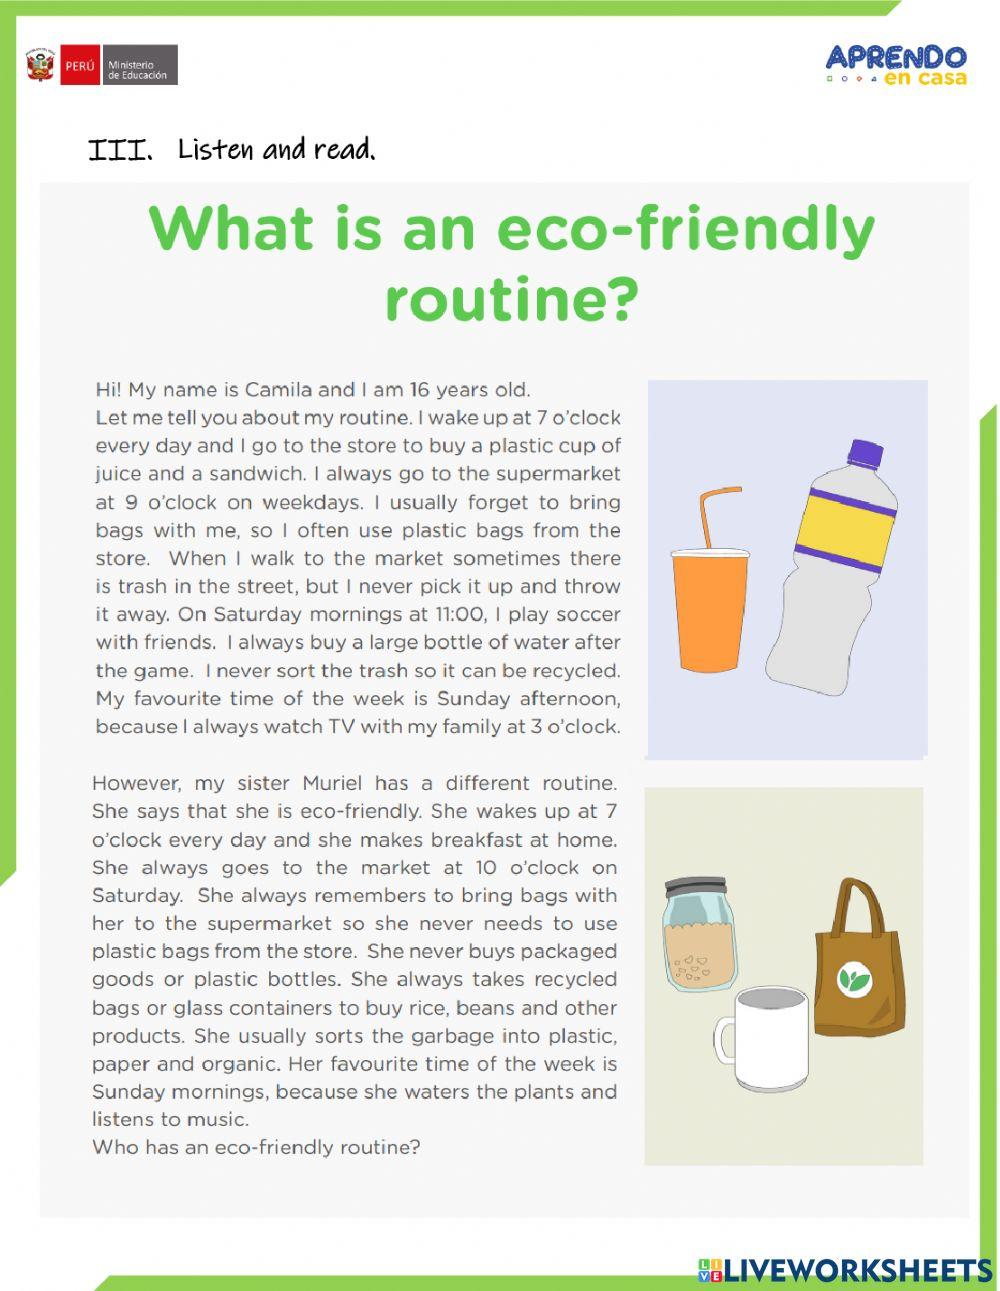 Ecofriendly routine